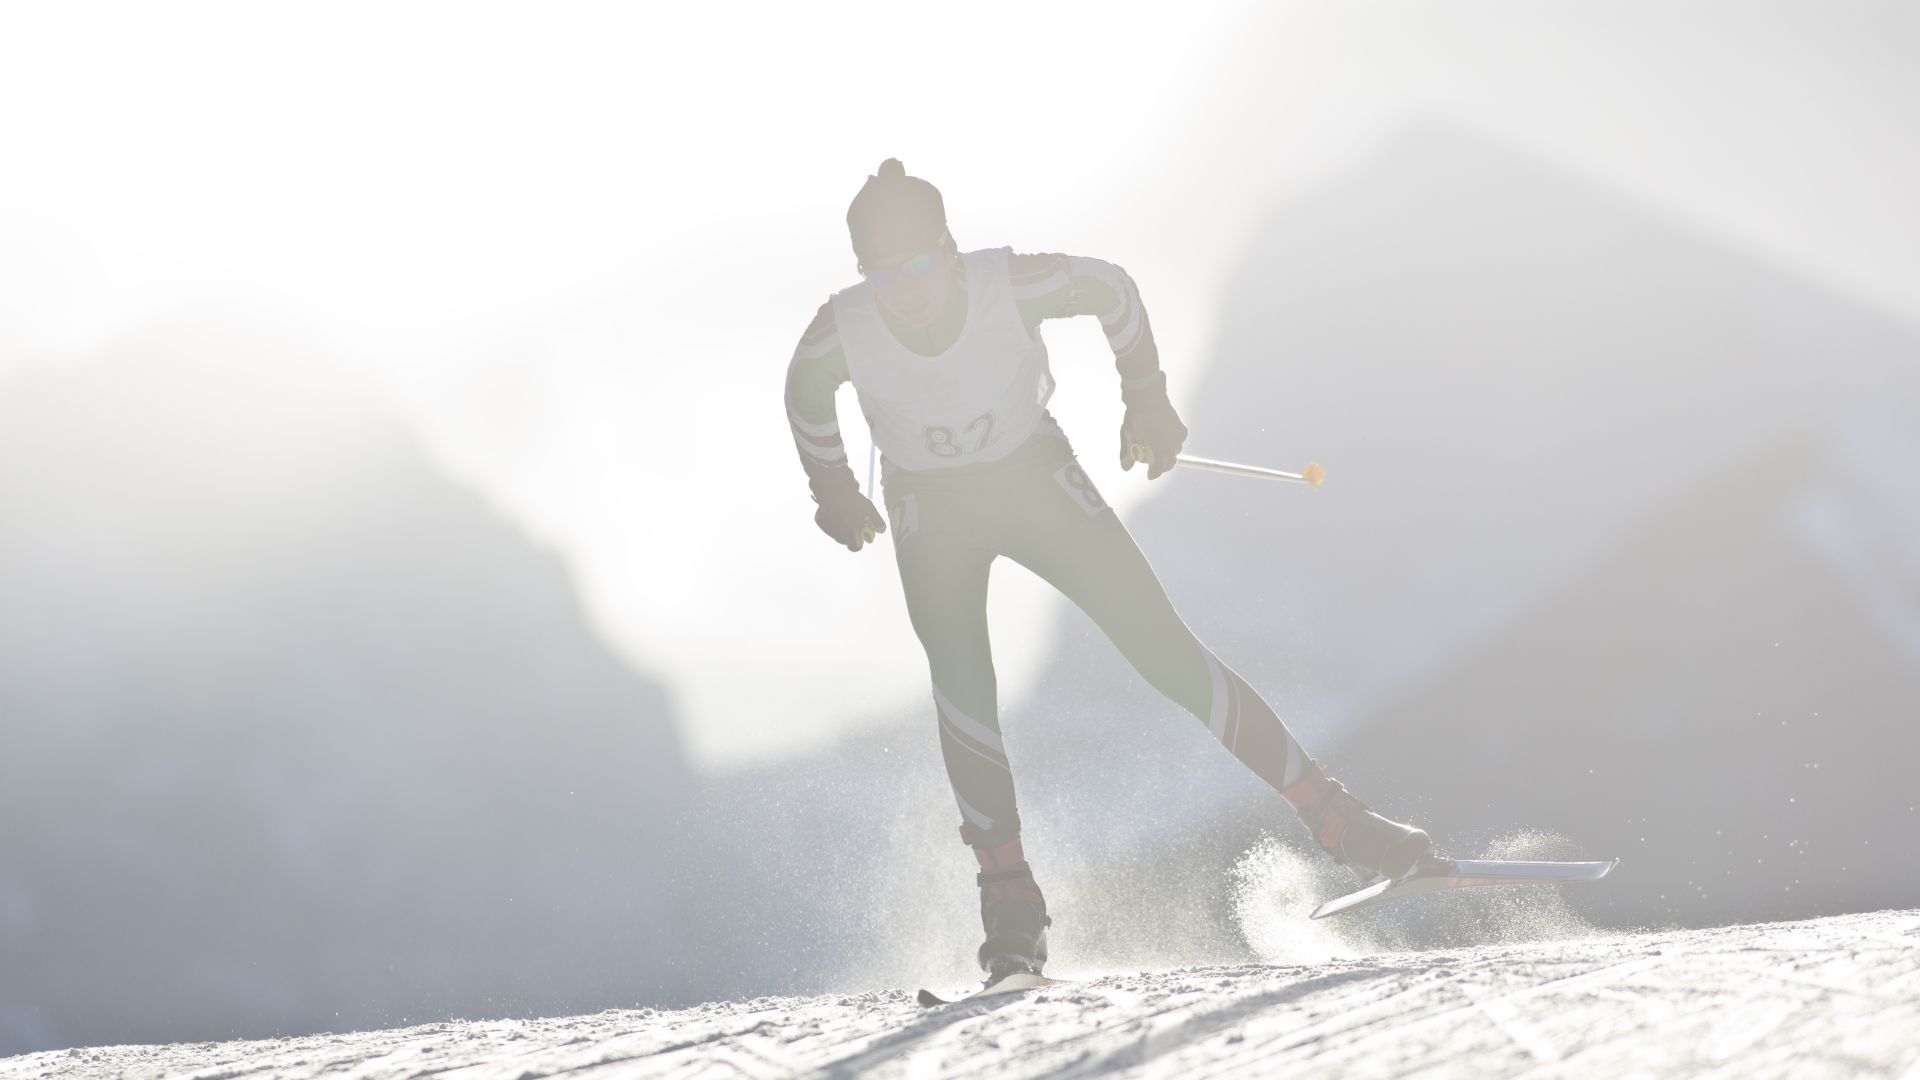 Un hombre patinando esquiando en una competición